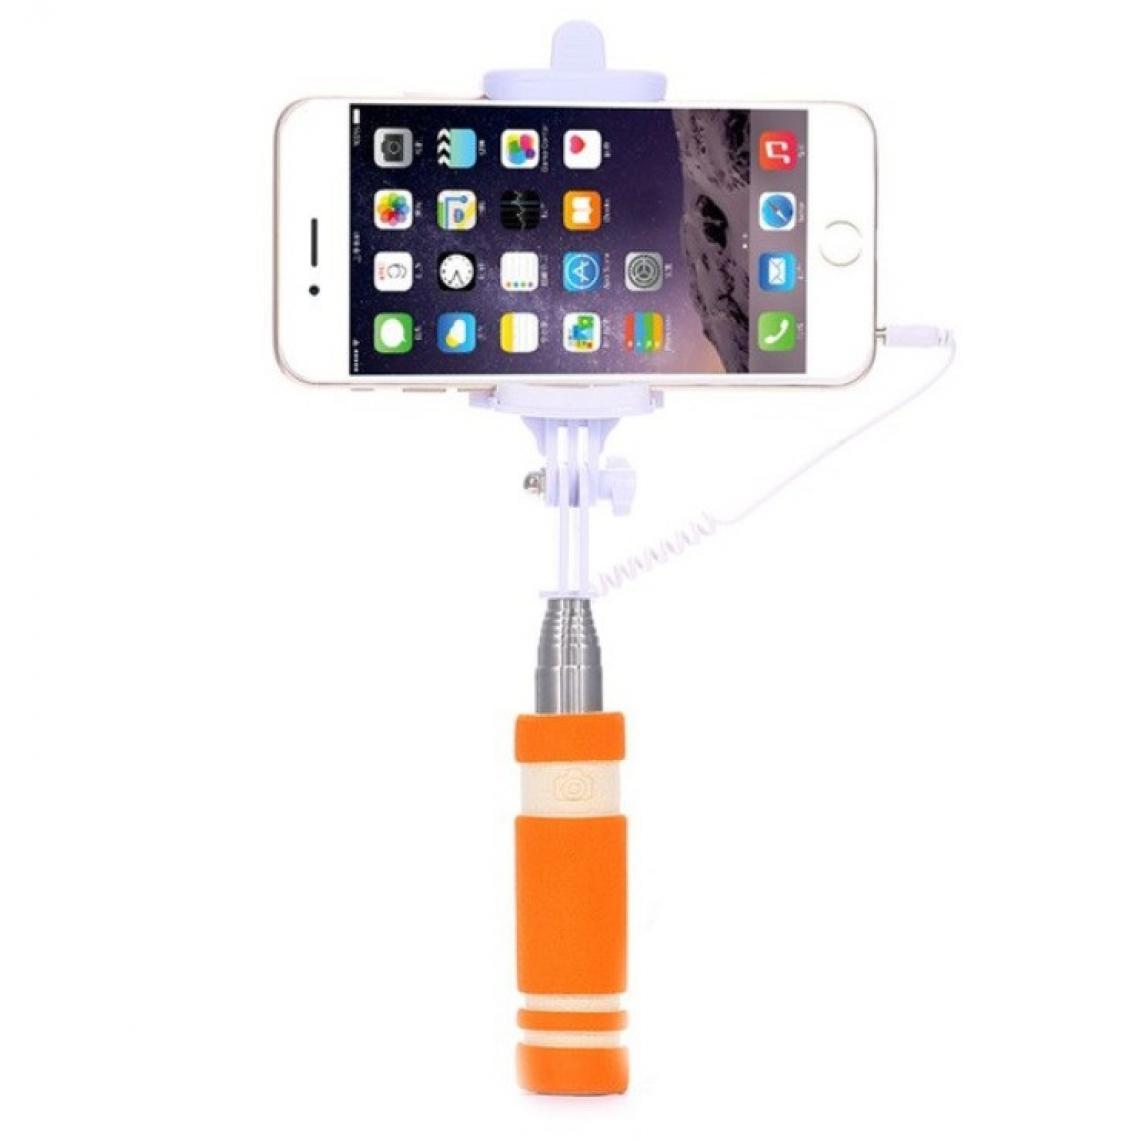 Shot - Mini Perche Selfie pour SONY Xperia L4 Smartphone avec Cable Jack Selfie Stick Android IOS Reglable Bouton Photo (ORANGE) - Autres accessoires smartphone